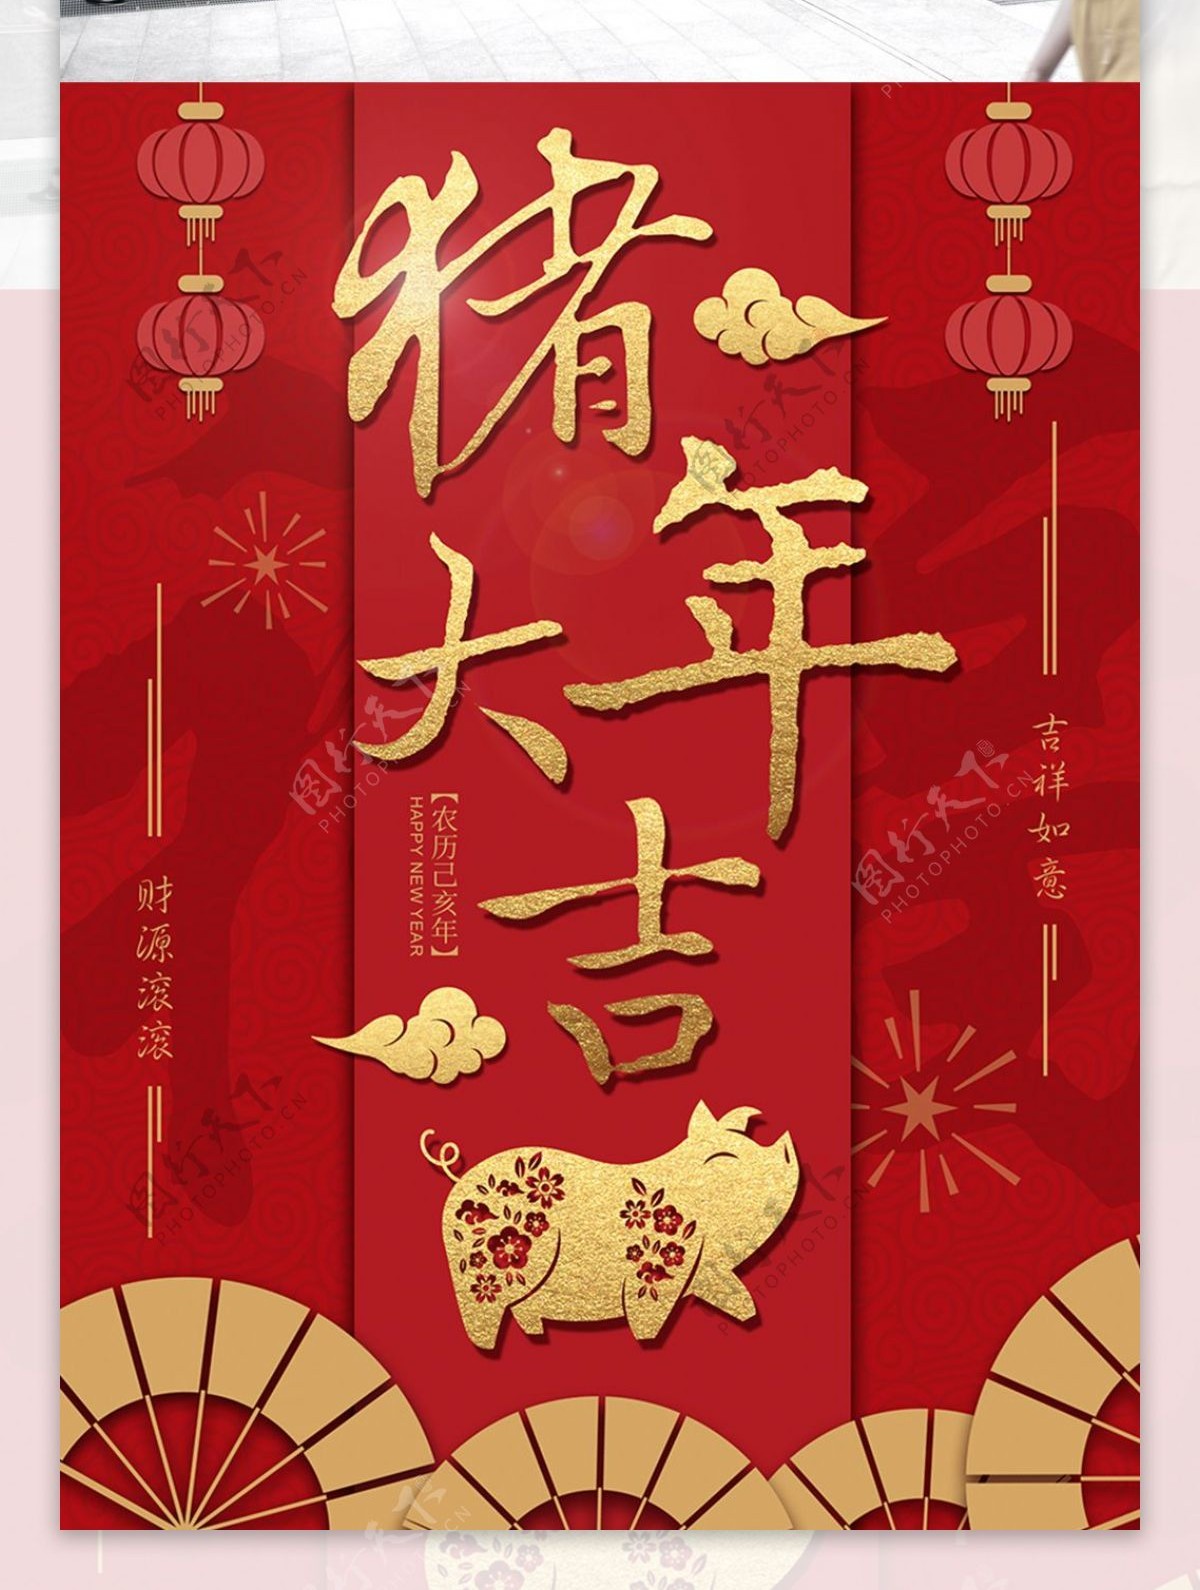 原创2019红色喜庆新春猪年大吉宣传海报